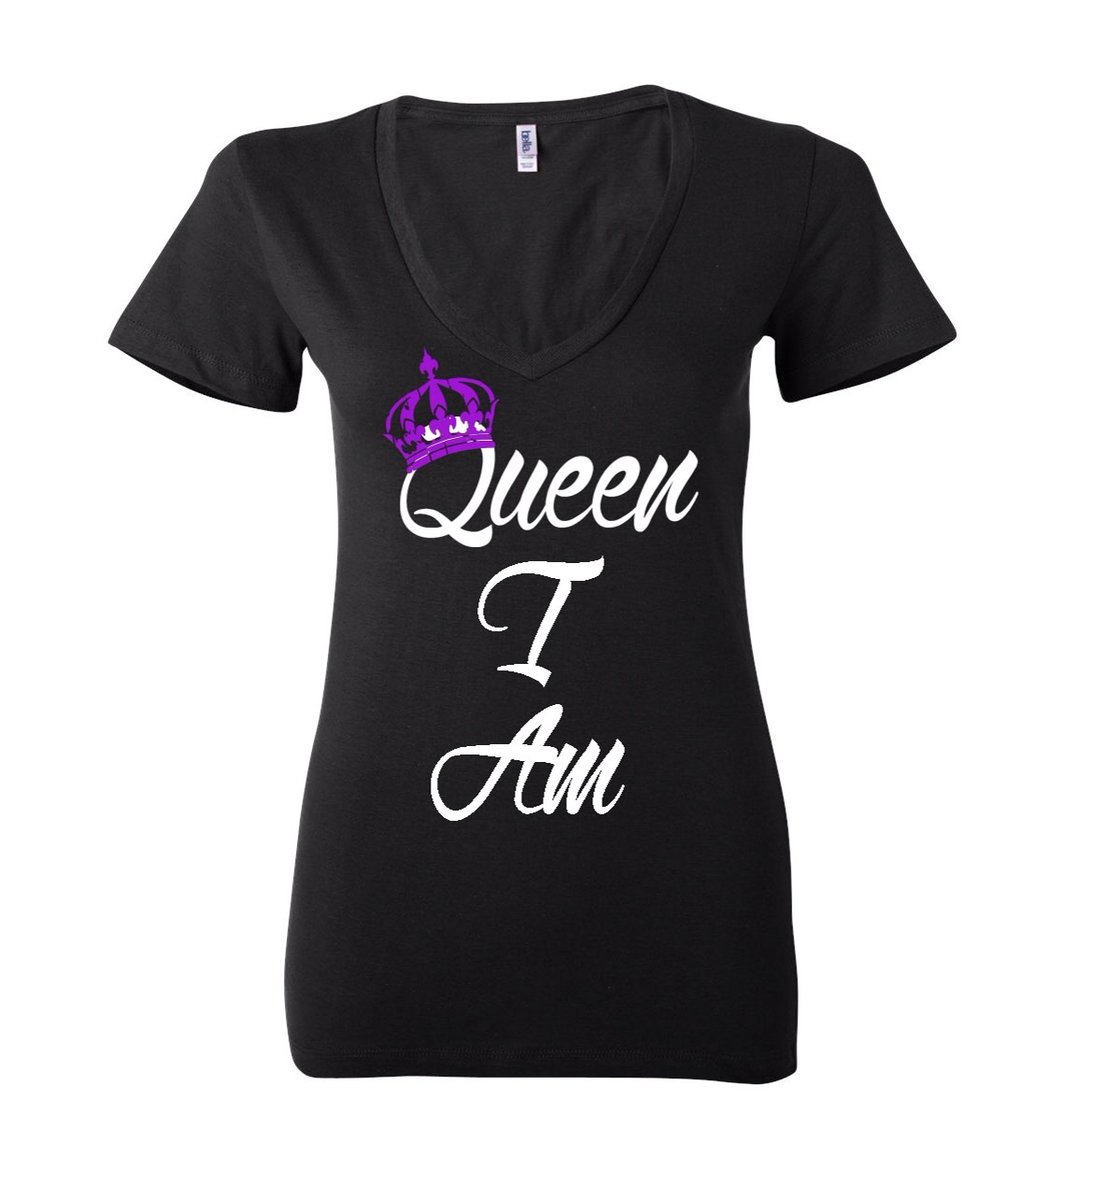 Image of Black "Queen I Am" Tee